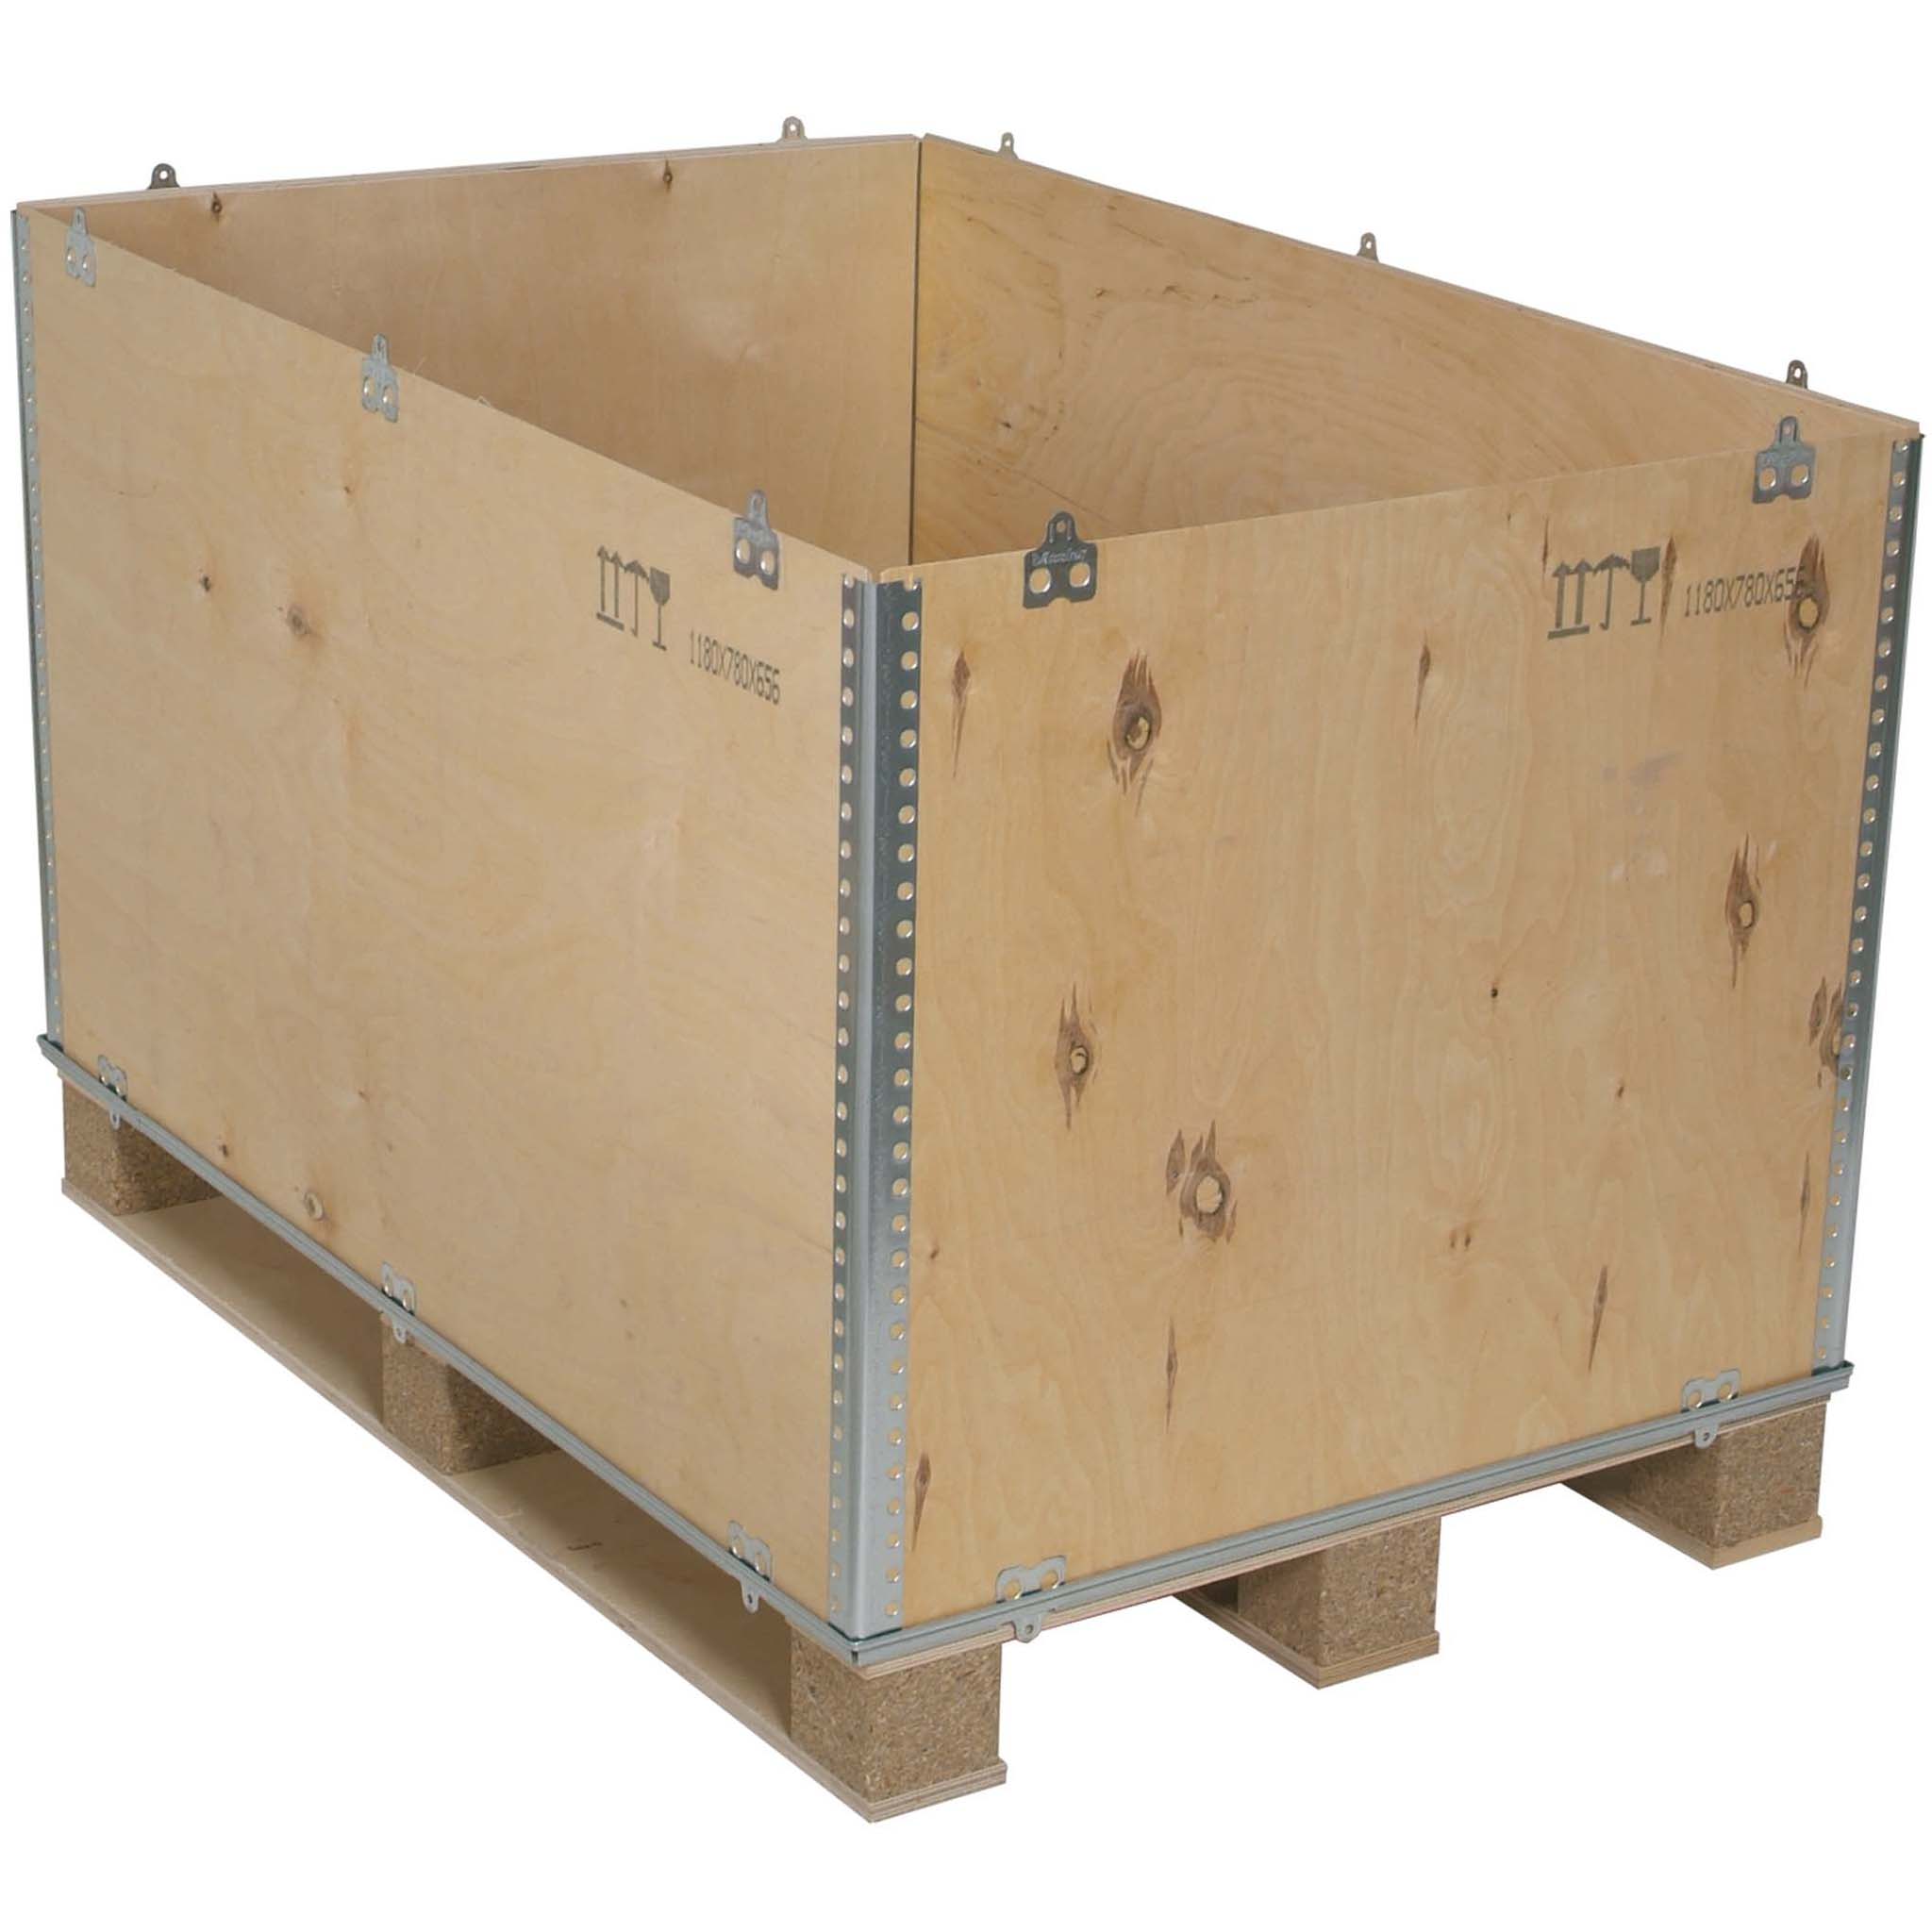 Cargo Box aufgestellt mit Palettenunterbau